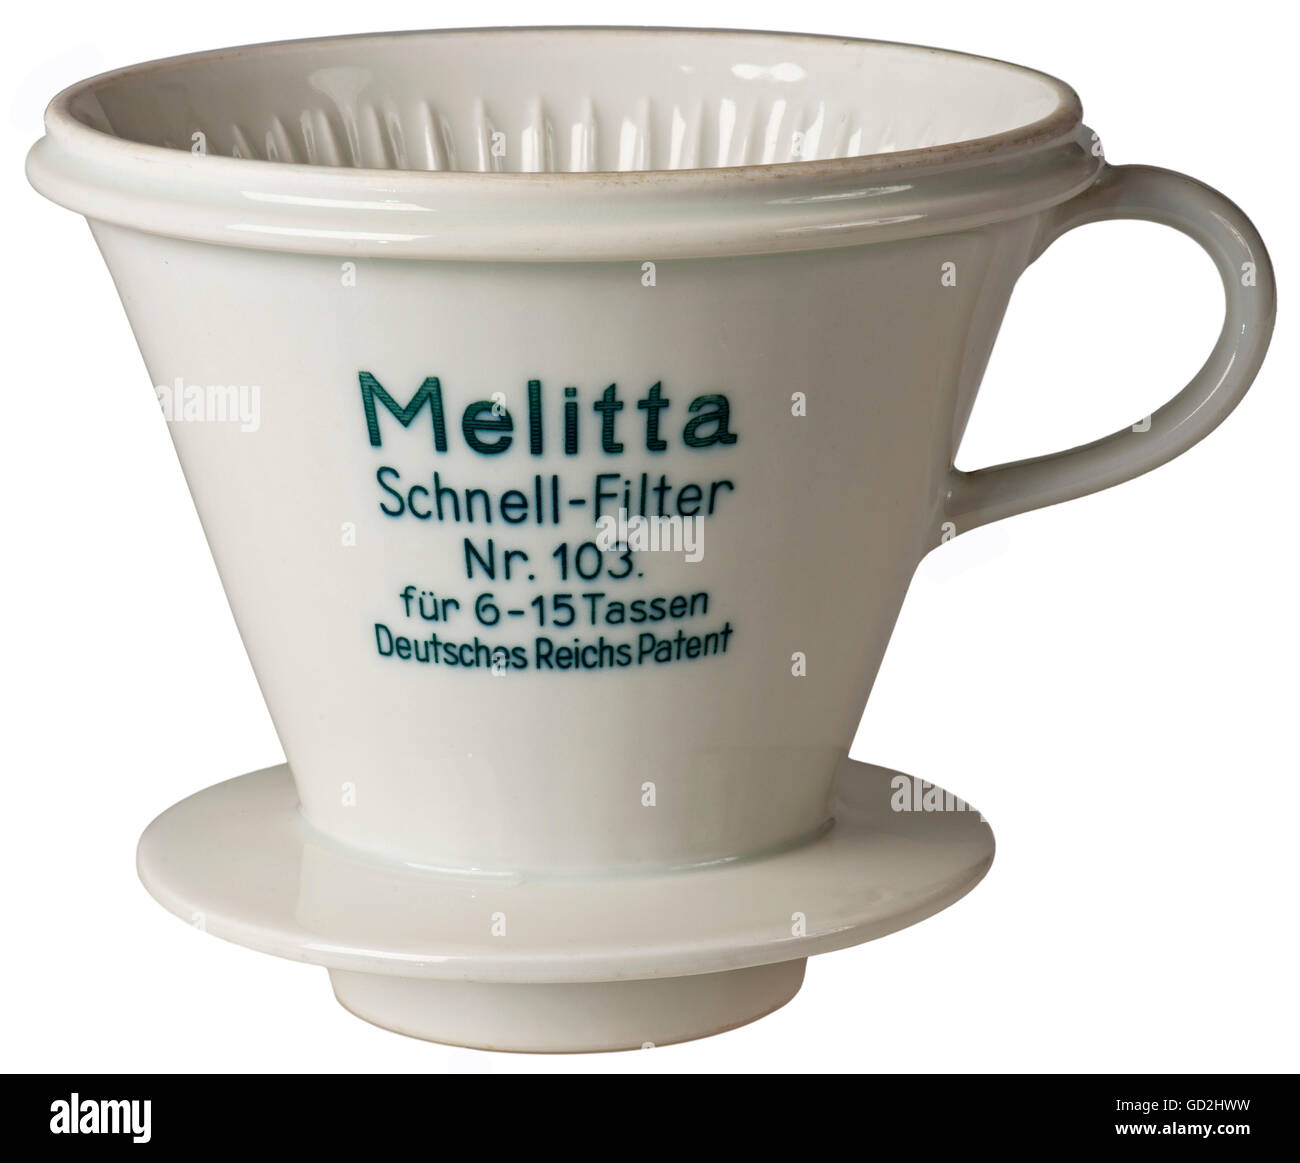 Caffè, Melitta, filtro rapido caffè numero 103, per 6 fino a 15 tazze,  brevetto imperiale tedesco, Germania, 1935, brevetti, filtro caffè, filtri  caffè, porcellana, cina, chinaware, filtro Melitta, sacchetti Melitta,  sacchetti filtro